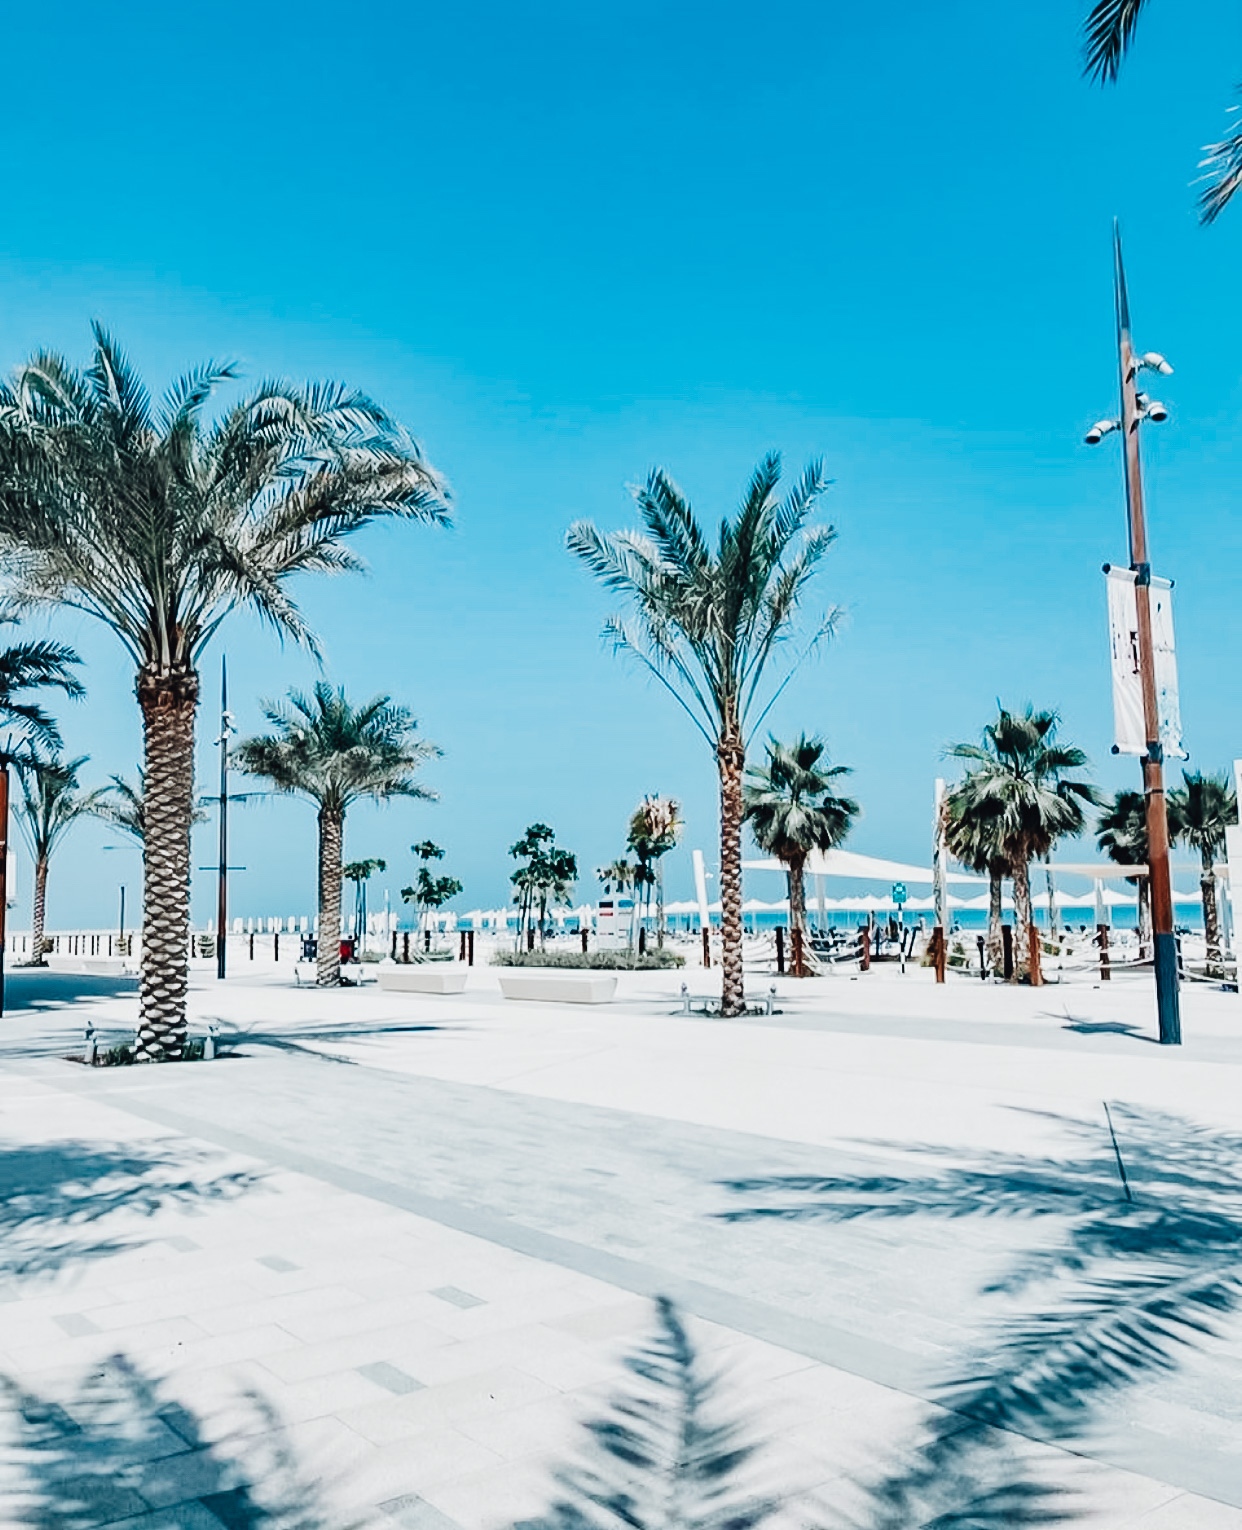 Soul Beach In Abu Dhabi A Stunning Beach That Is Gaining Immense